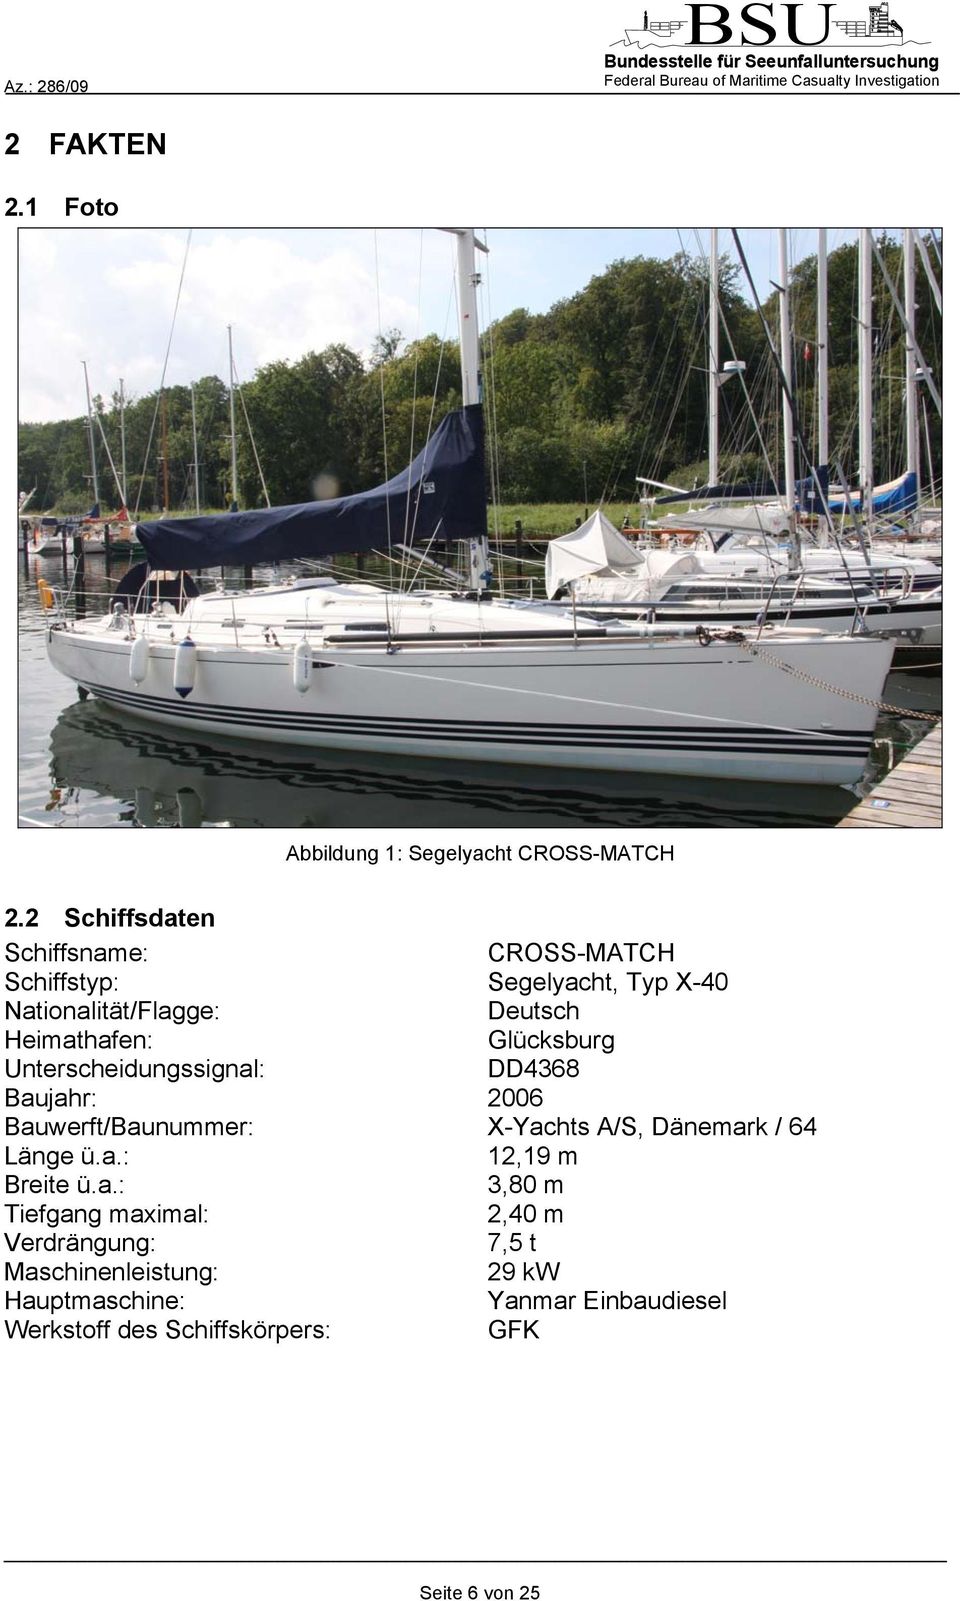 Glücksburg Unterscheidungssignal: DD4368 Baujahr: 2006 Bauwerft/Baunummer: X-Yachts A/S, Dänemark / 64 Länge ü.a.: 12,19 m Breite ü.